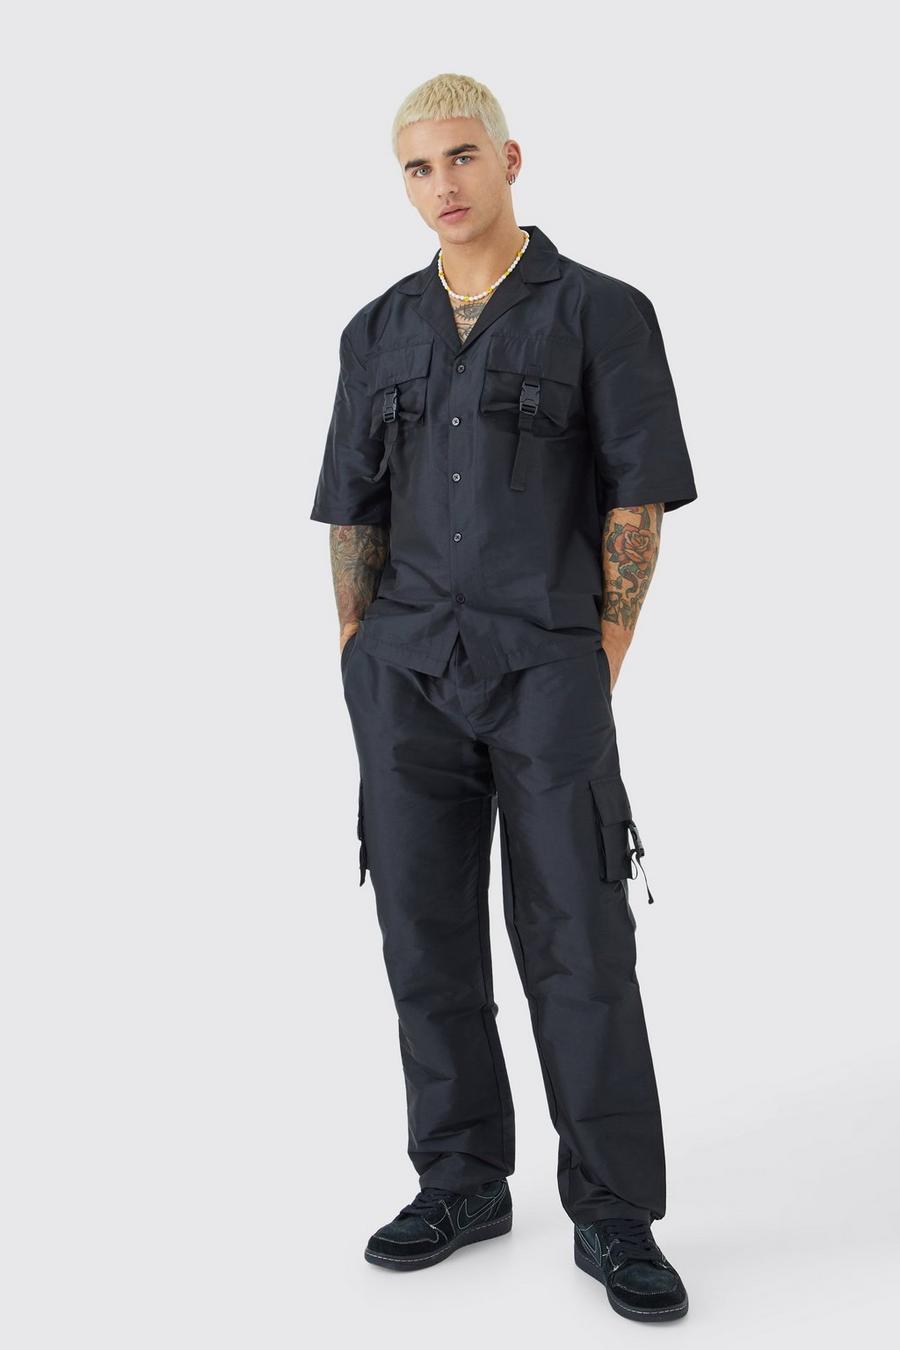 Black Short Sleeve Revere Utility Shirt & Cargo Trouser Set